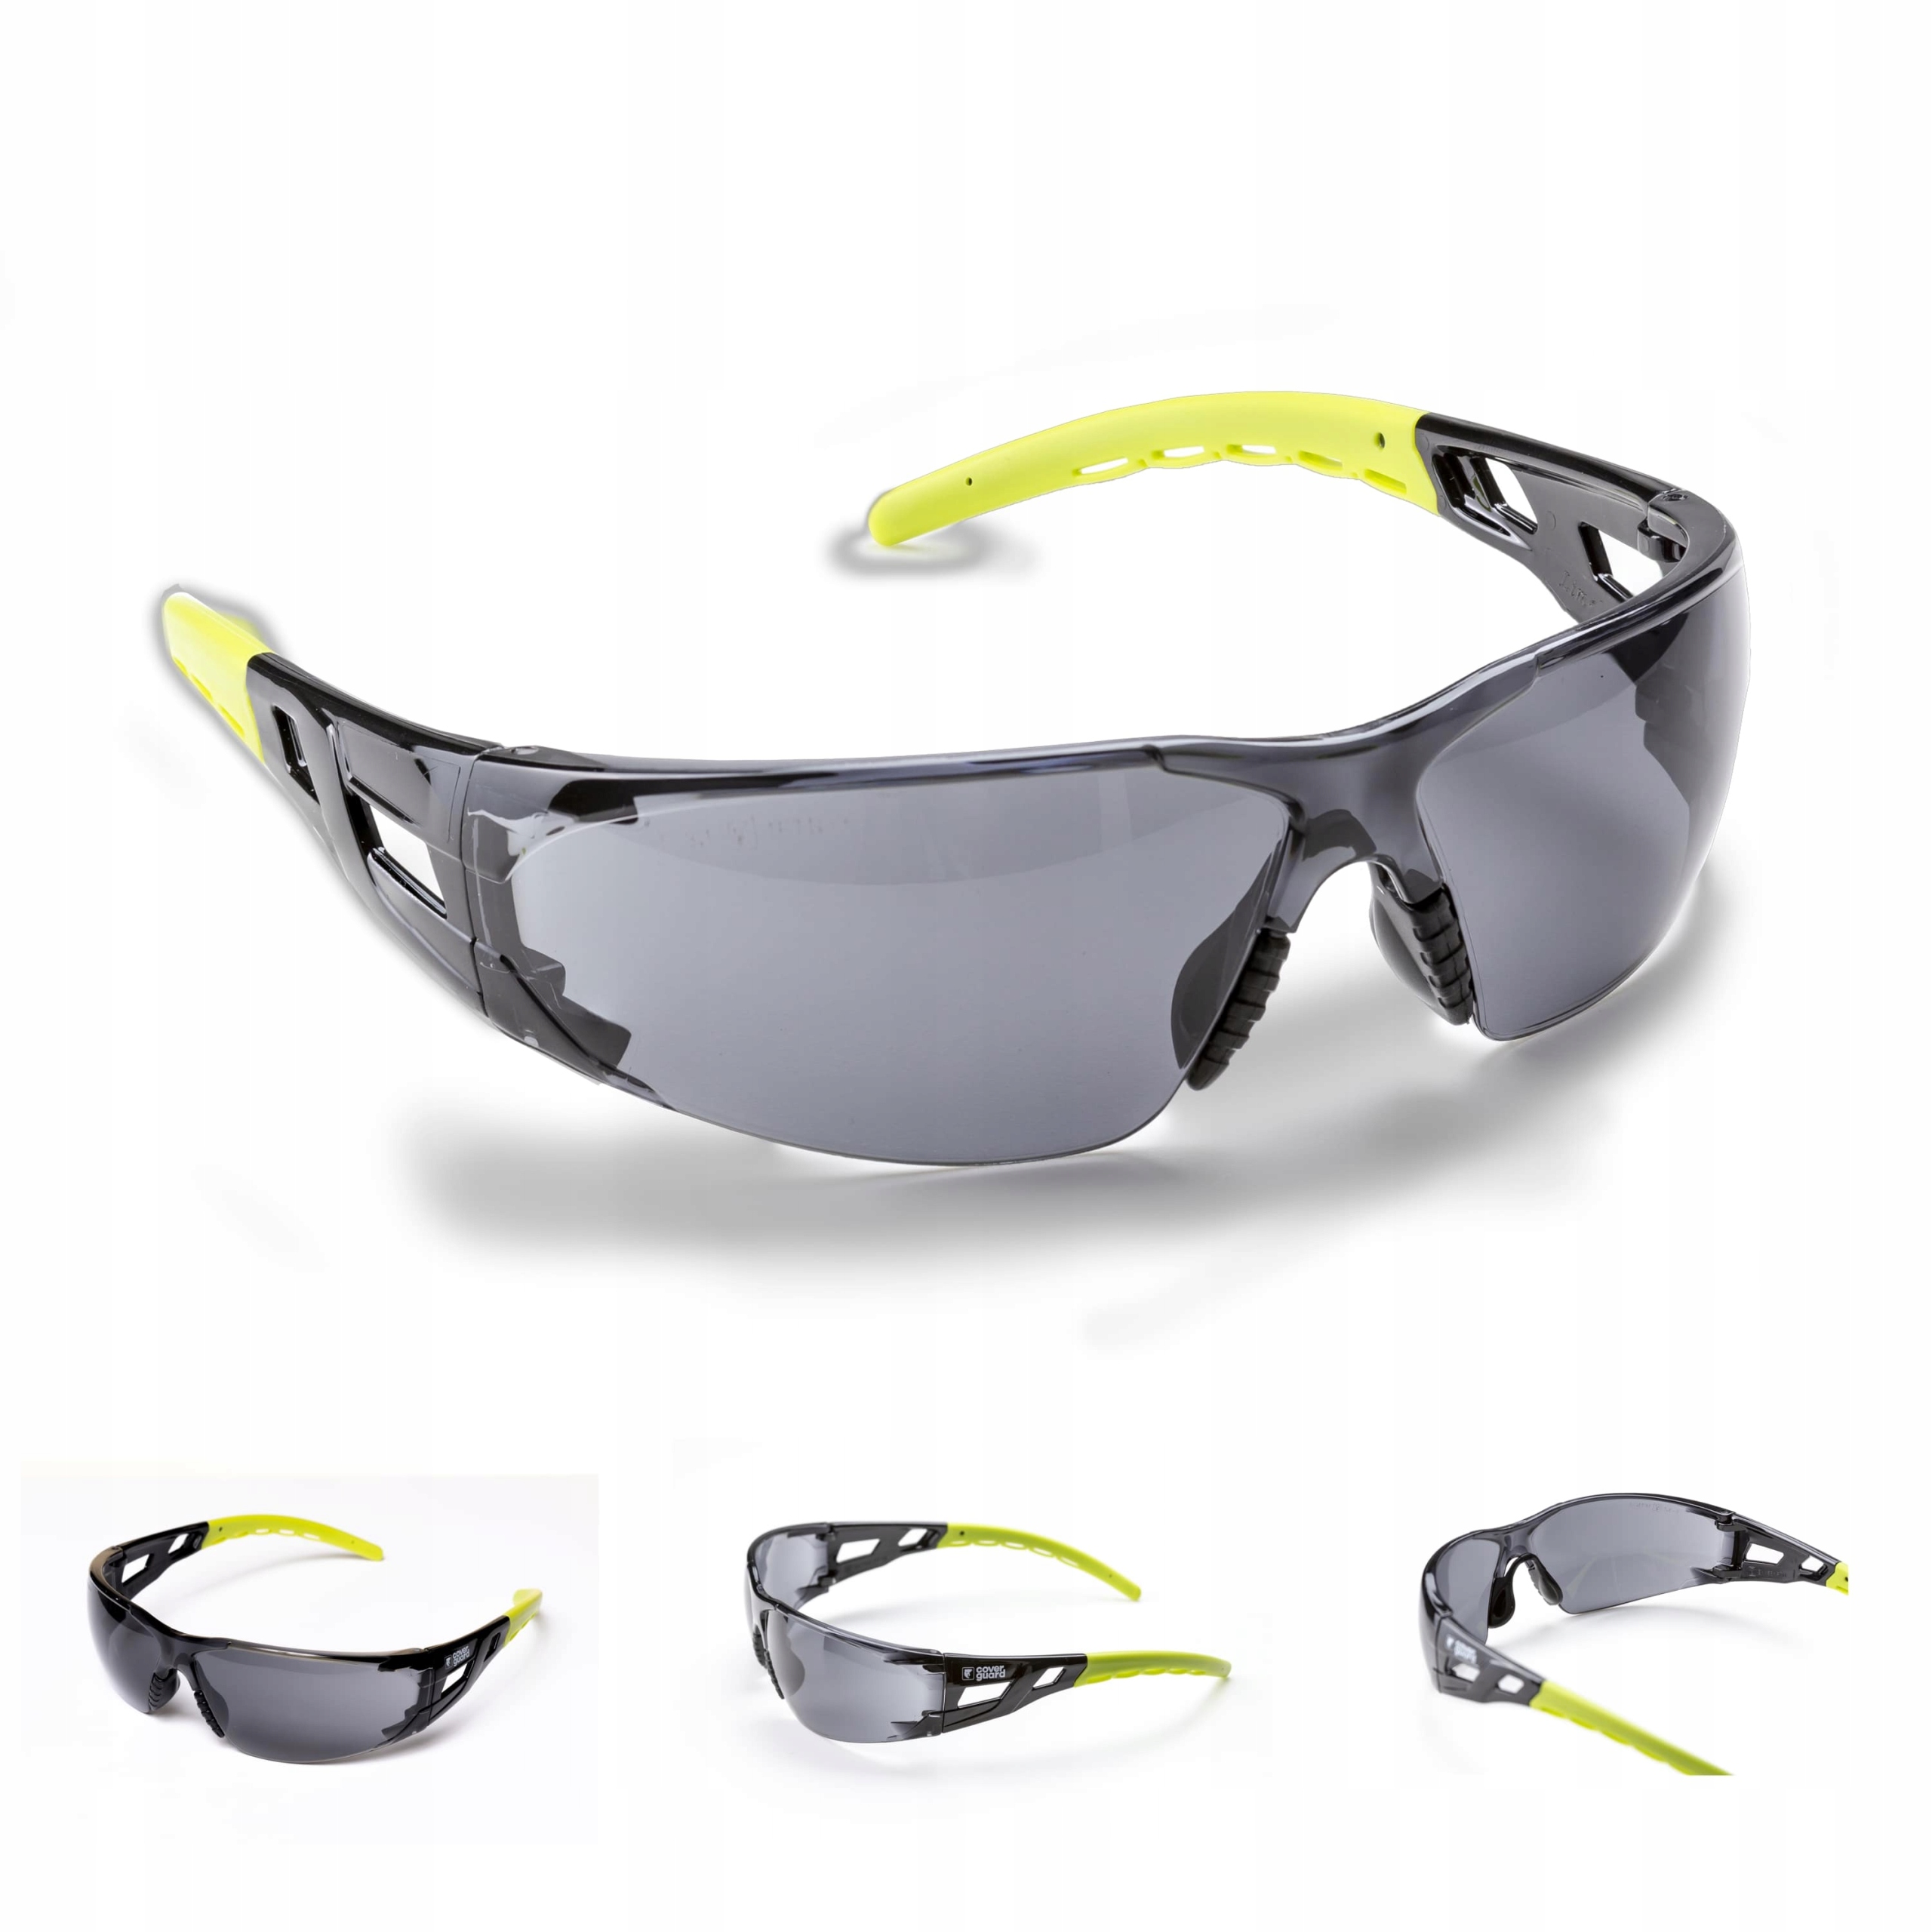 Delta Plus Kilimandjaro Smoke Safety Glasses. Очки открытого типа светлые Сургут ( покрытие от царапин Алмаз). Очки ассортимента PNG. Очки Coverguard защитные отзывы.